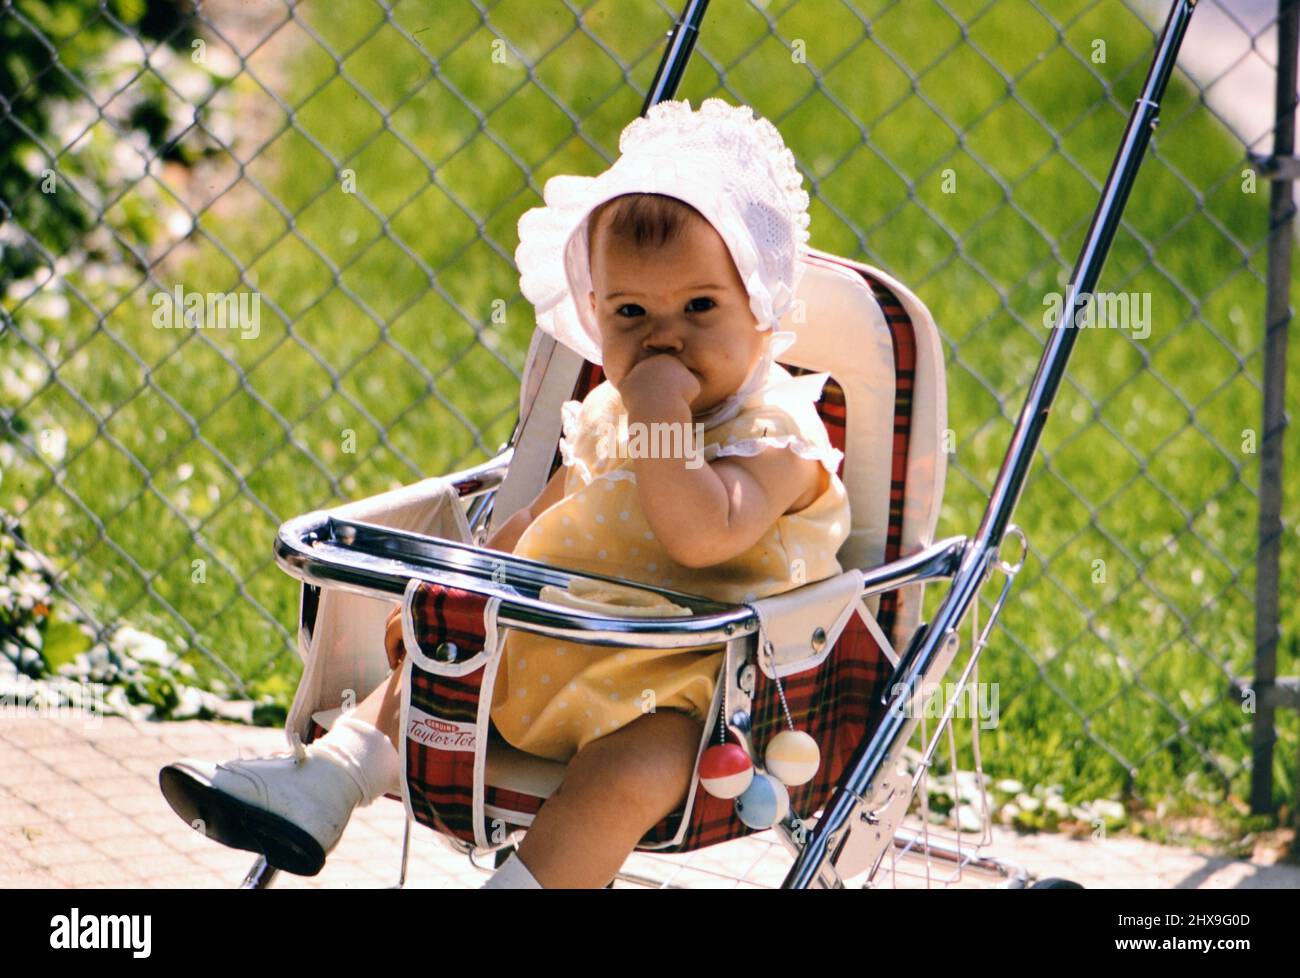 Ein kleines Mädchen, das in einem Kinderwagen sitzt und eine Haube trägt, ca. 1969 Stockfoto